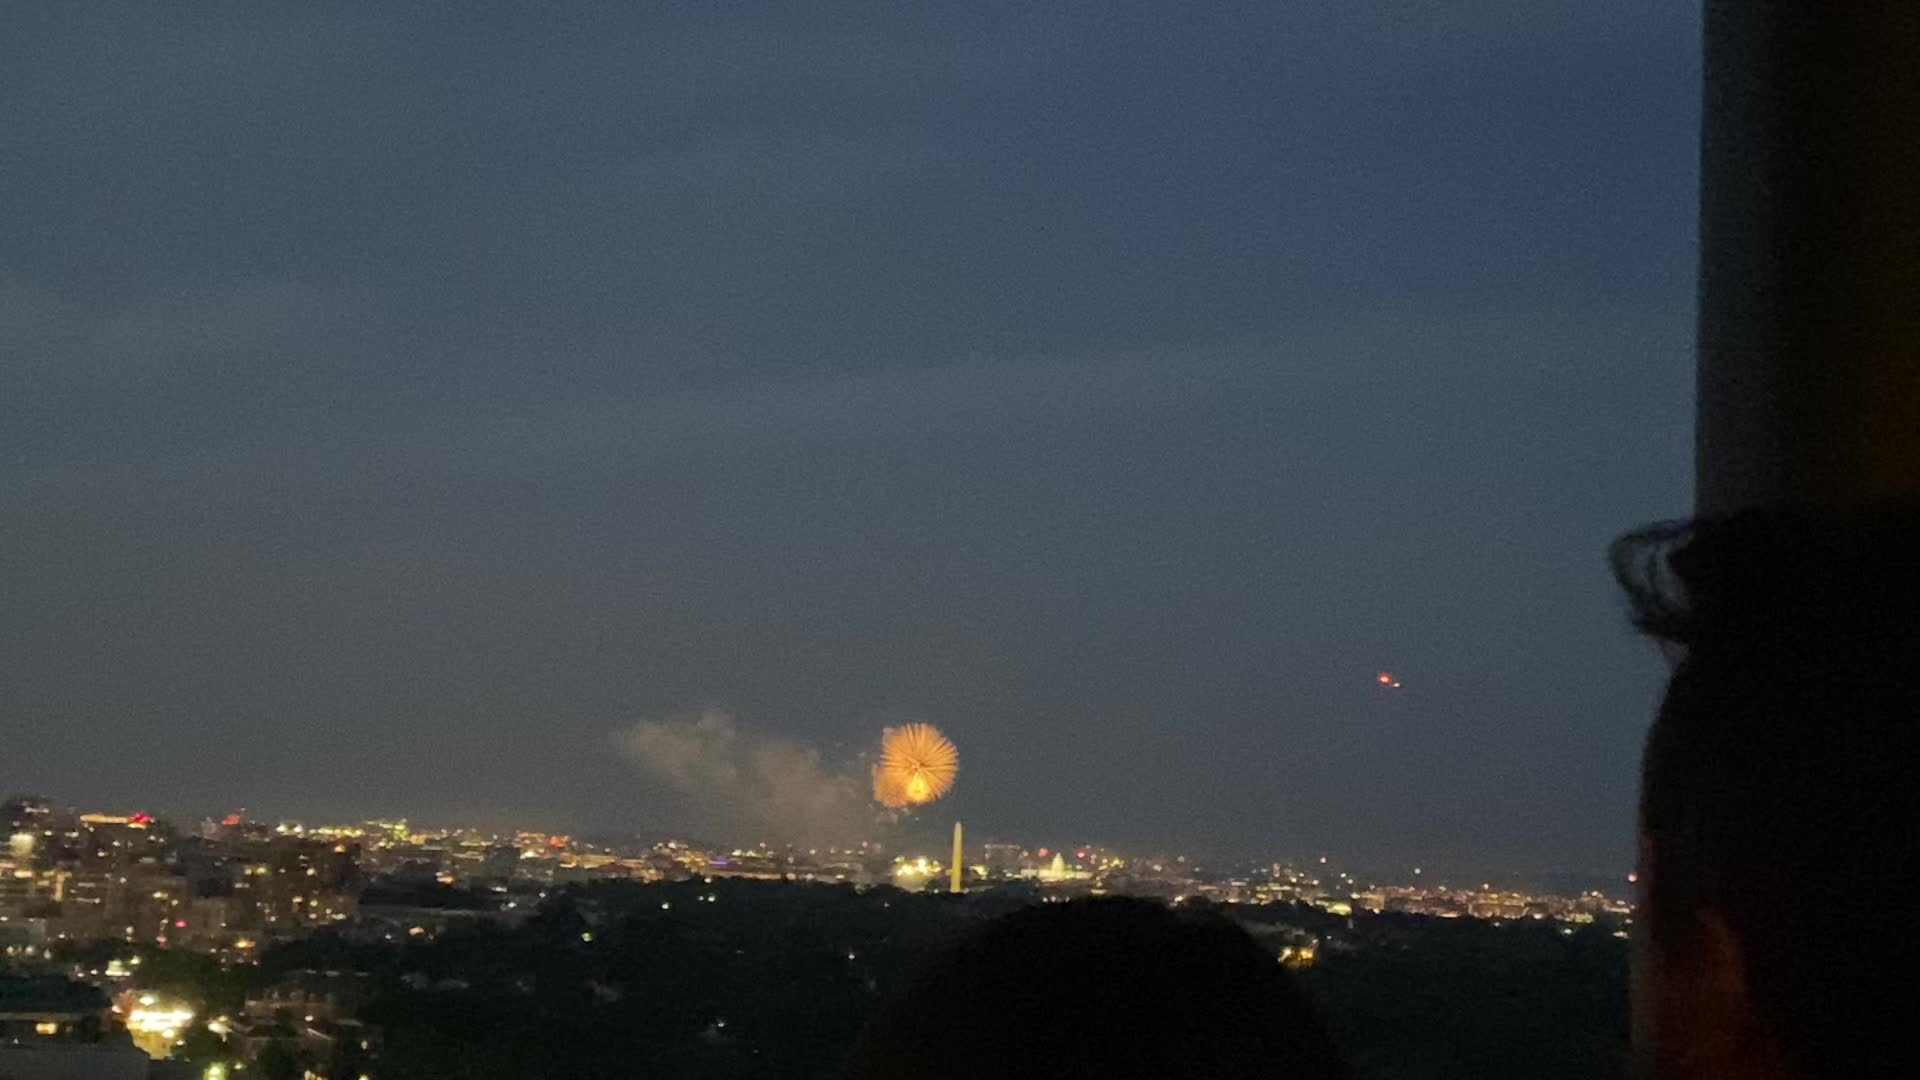 Enjoyed watching white house fireworks